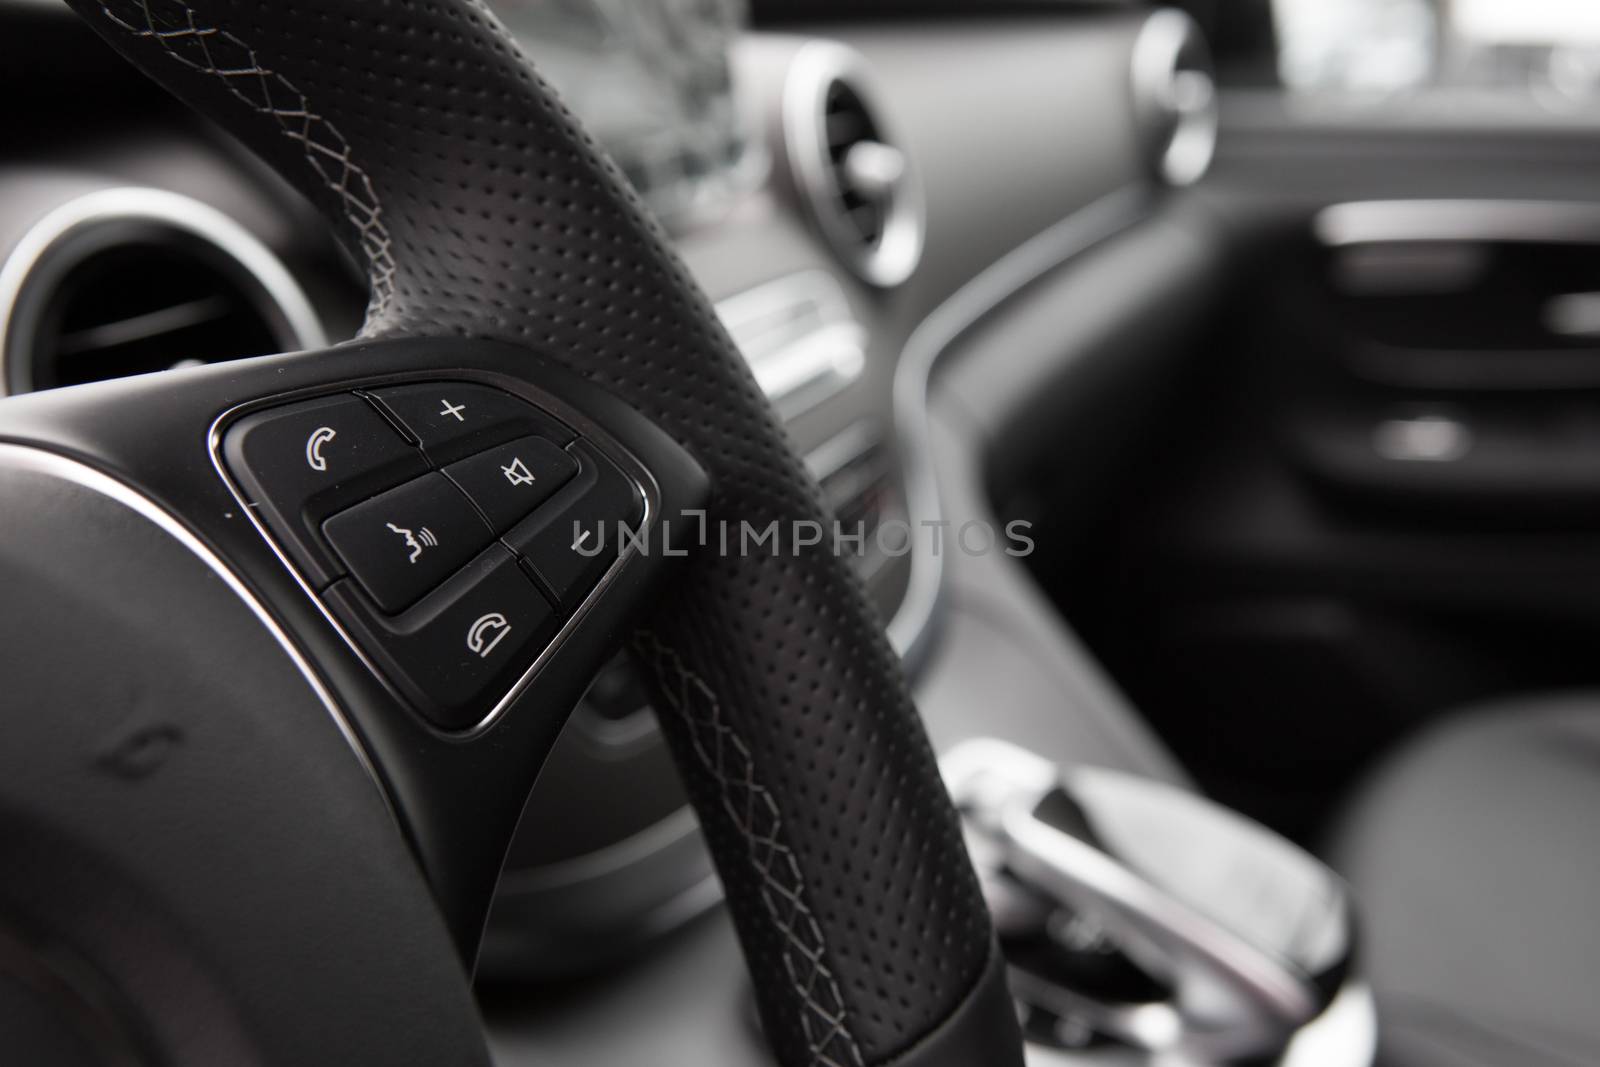 Closeup photo of car interiors. Shallow DOF